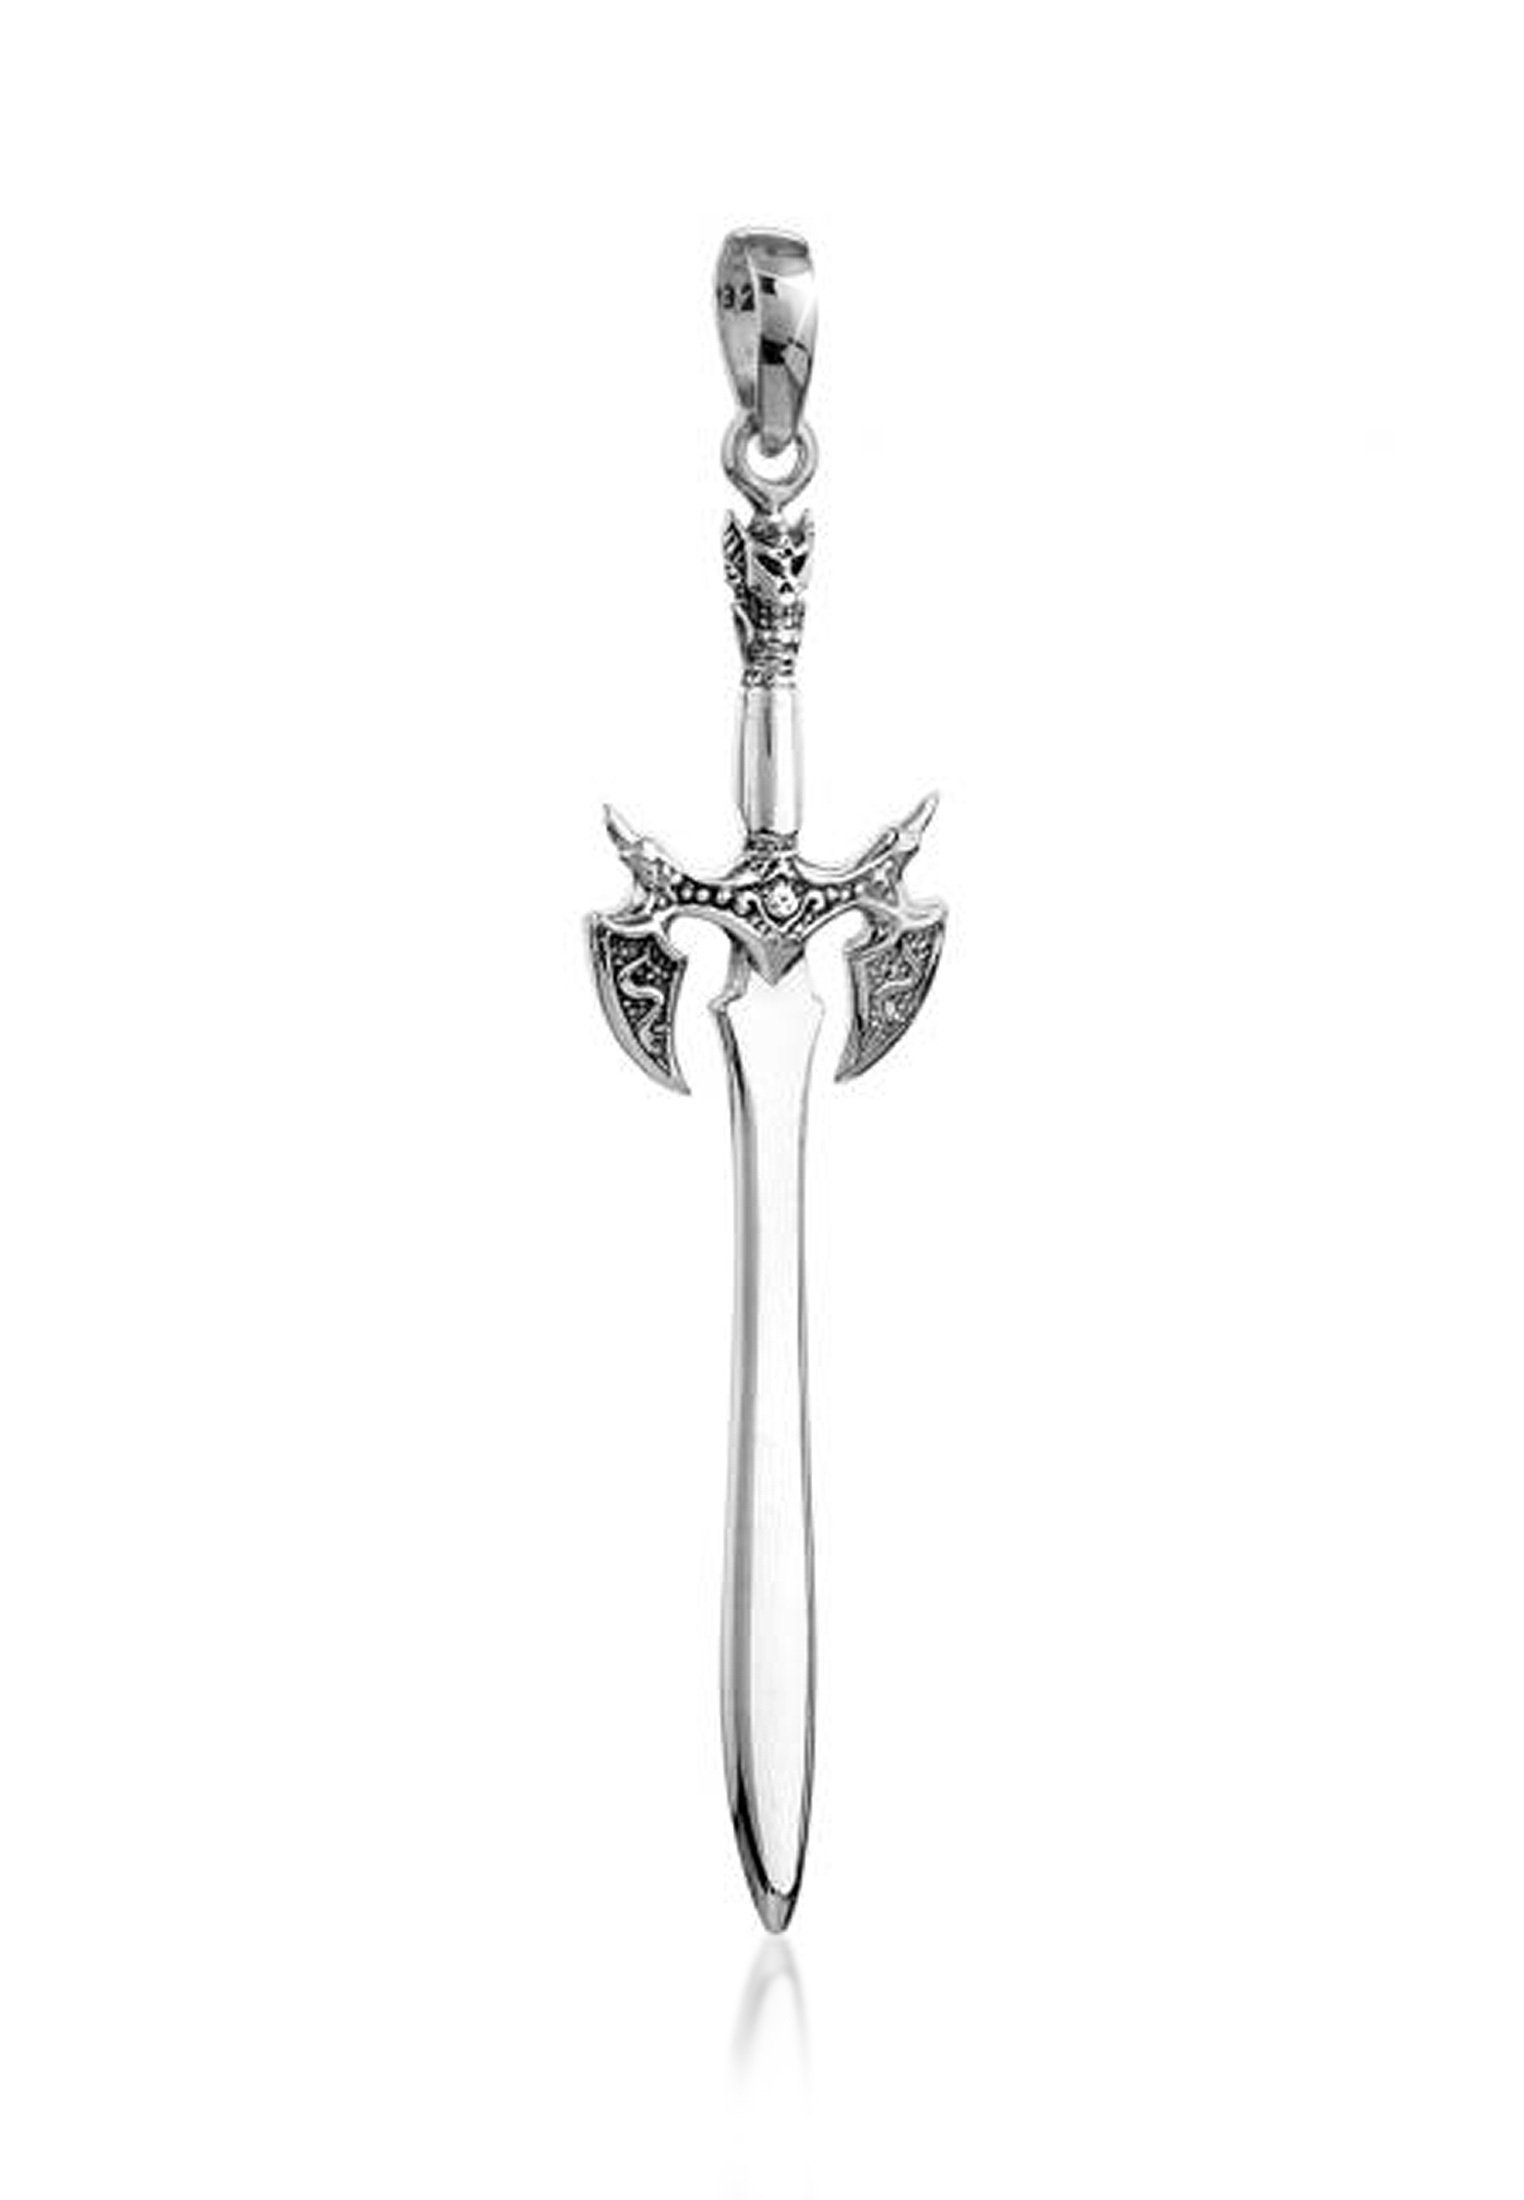 Kuzzoi Kettenanhänger Herren Schwert Symbol 925 Silber, Kunstvoller Schwert  Anhänger als Zeichen für Mut | Kettenanhänger